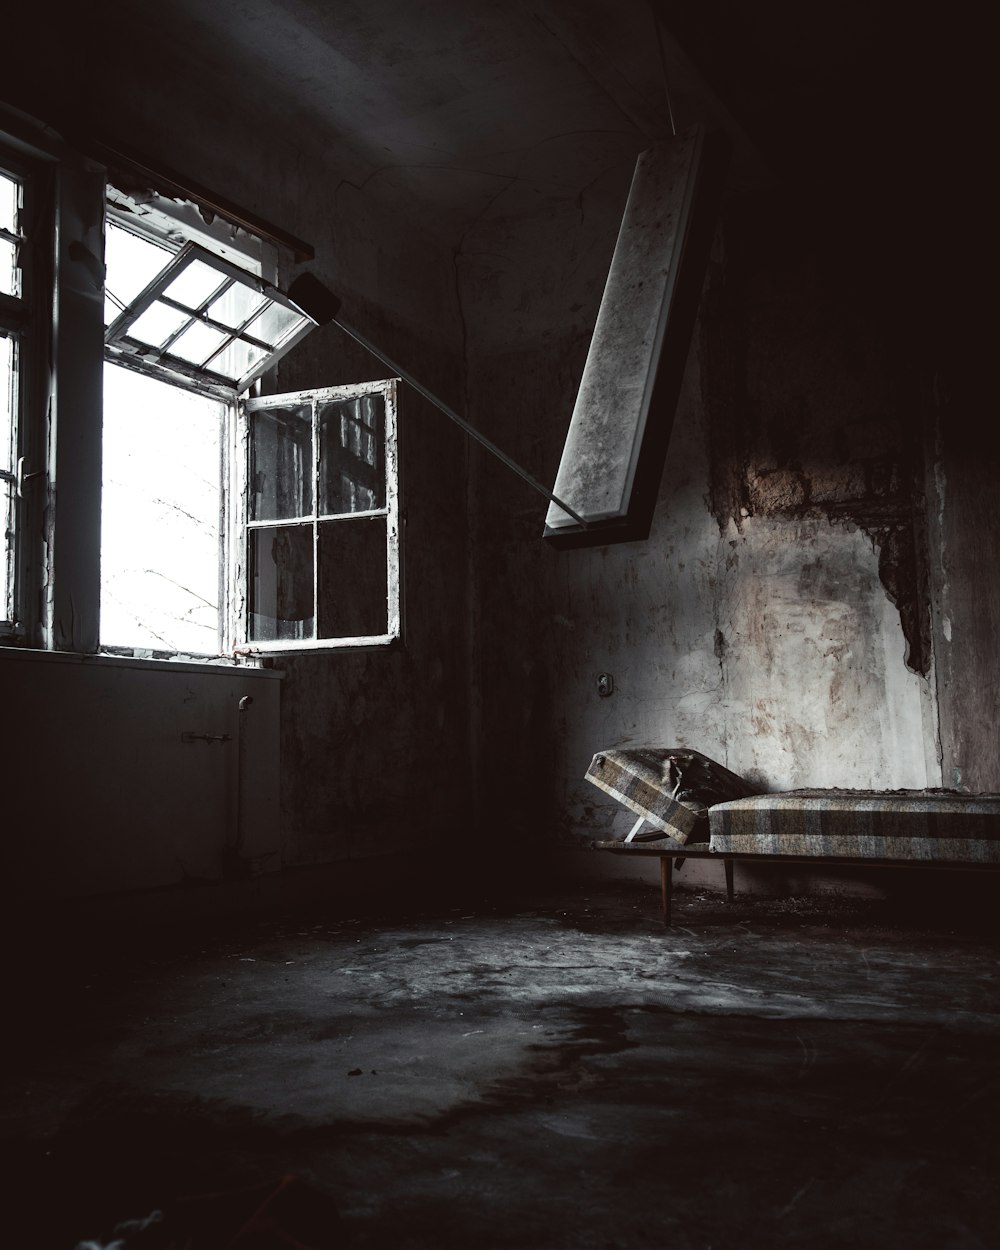 Bett in verlassenem Gebäude in der Nähe des geöffneten Fensters